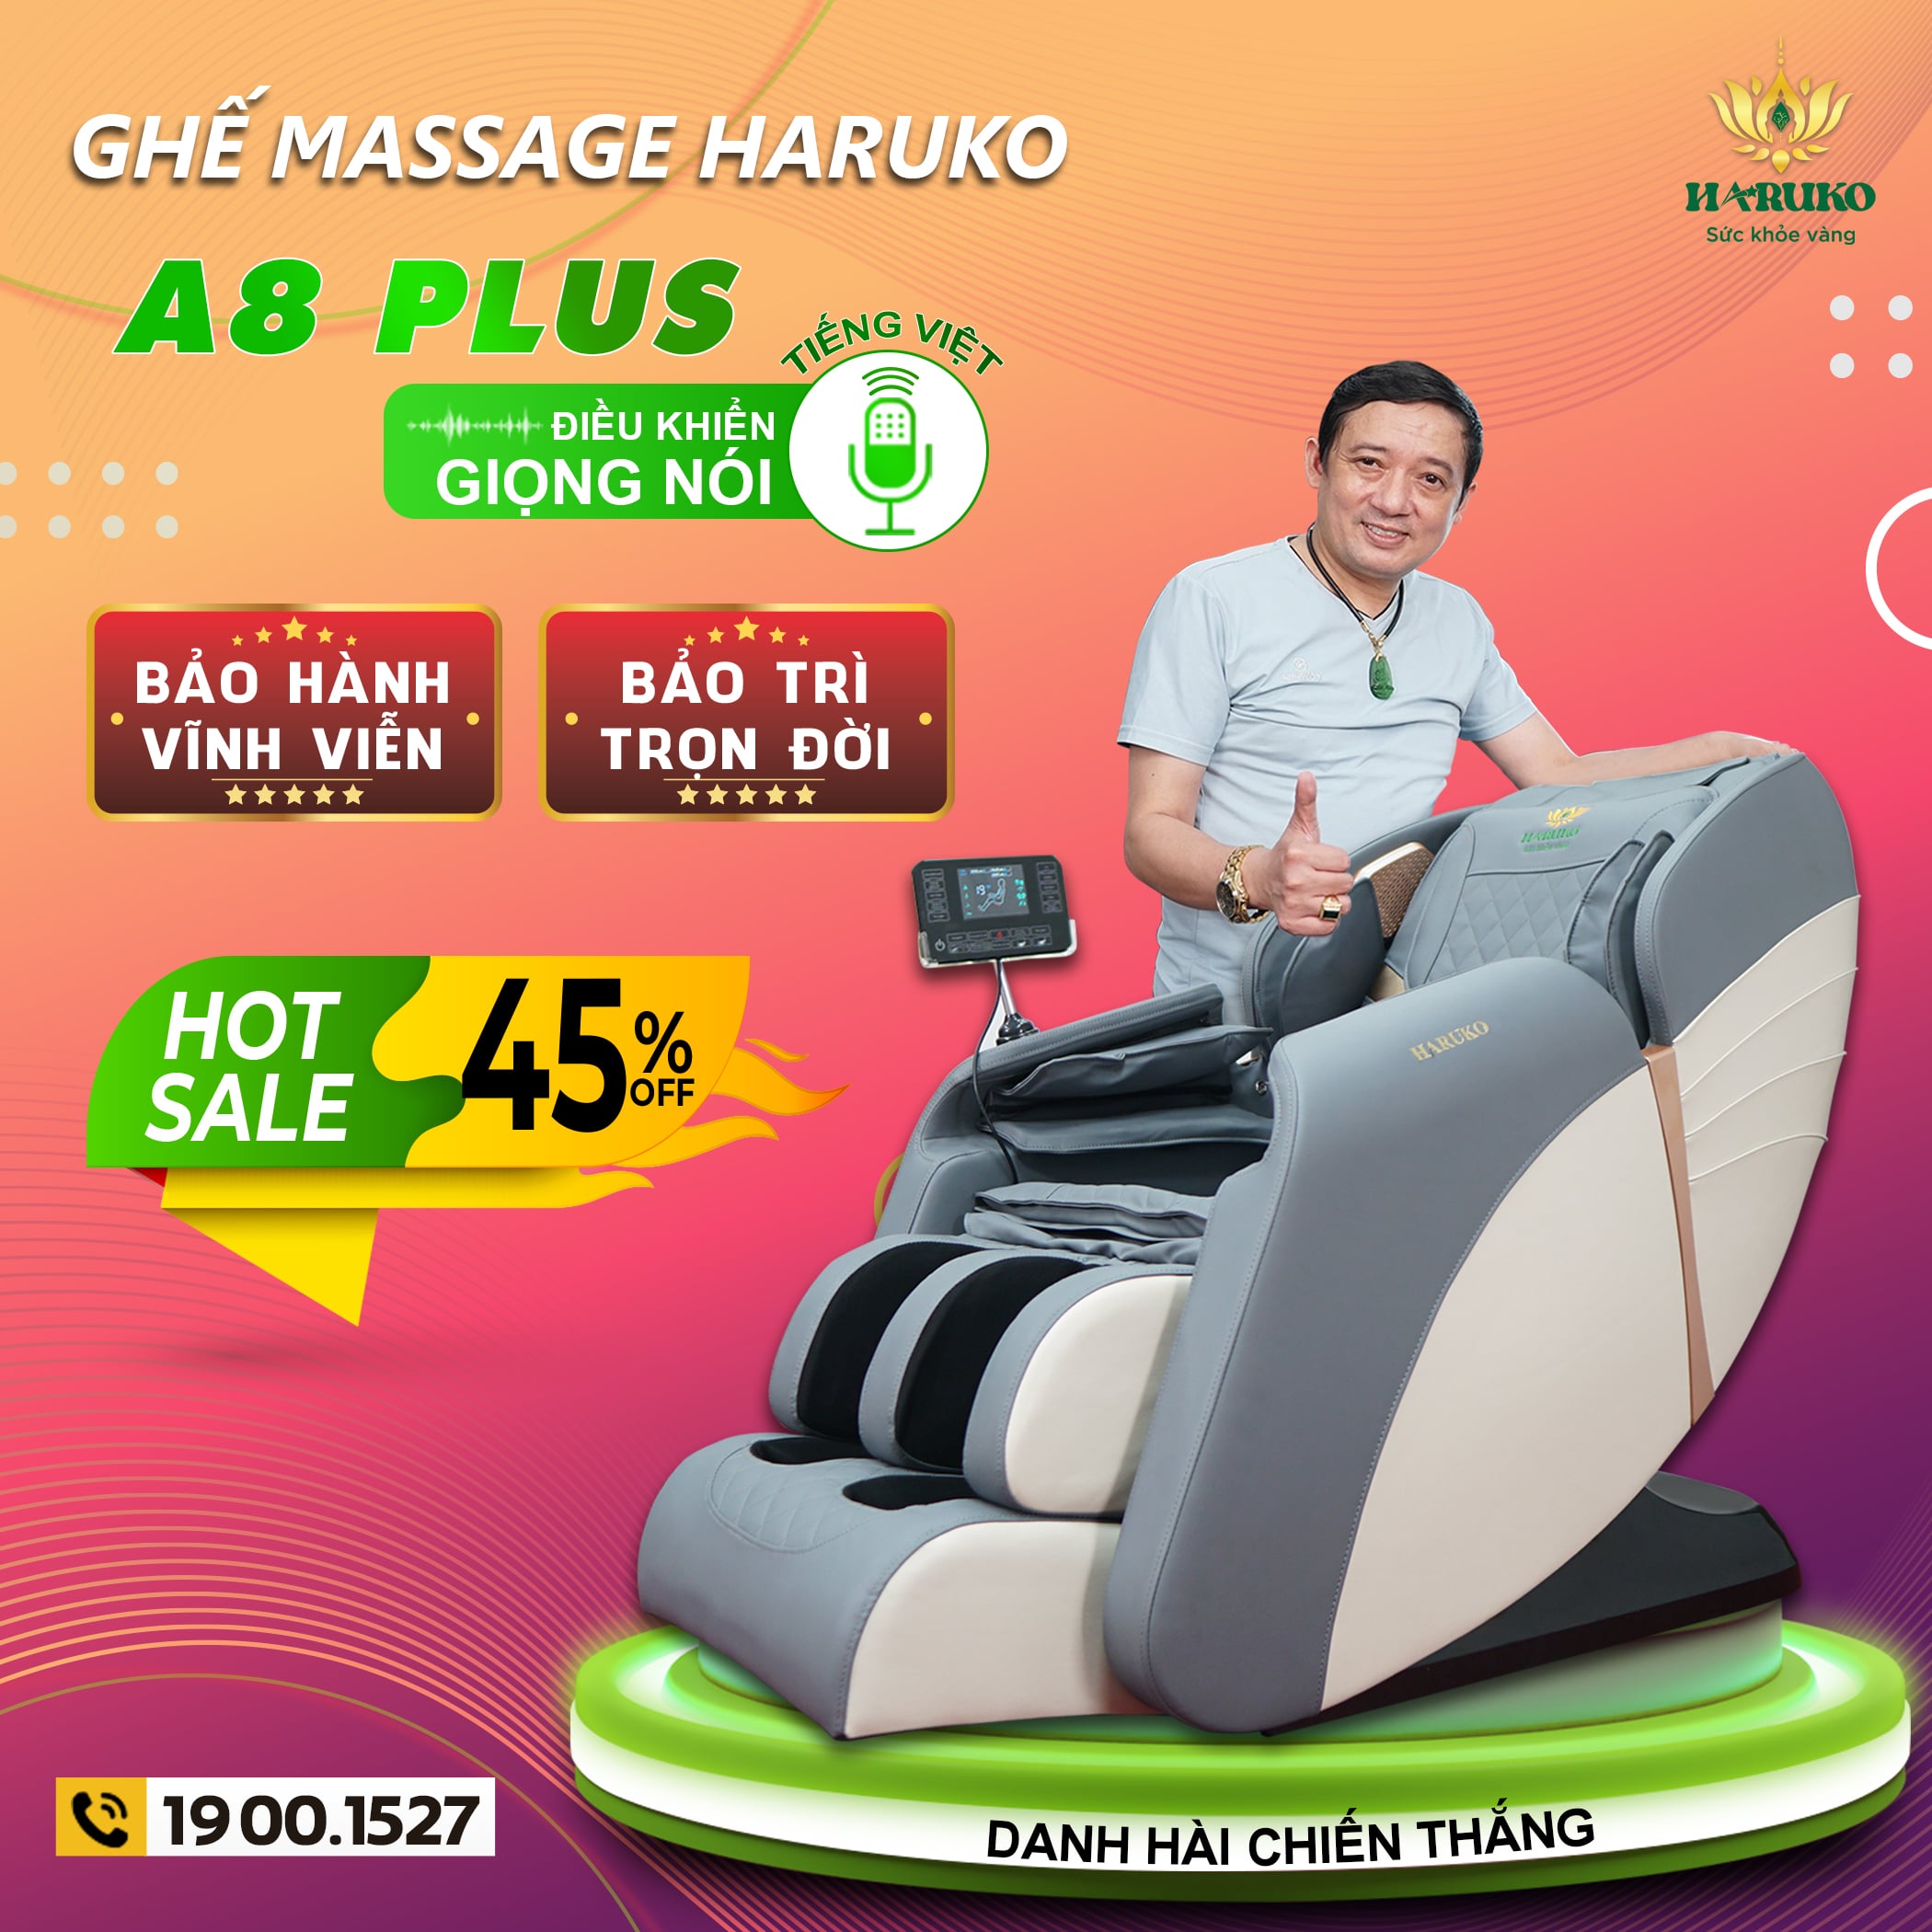 Ghế massage Haruko-A8 Plus với nhiều tính năng hiện đại và thiết kế sang trọng đang là sản phẩm thu hút sự chú ý của người dùng